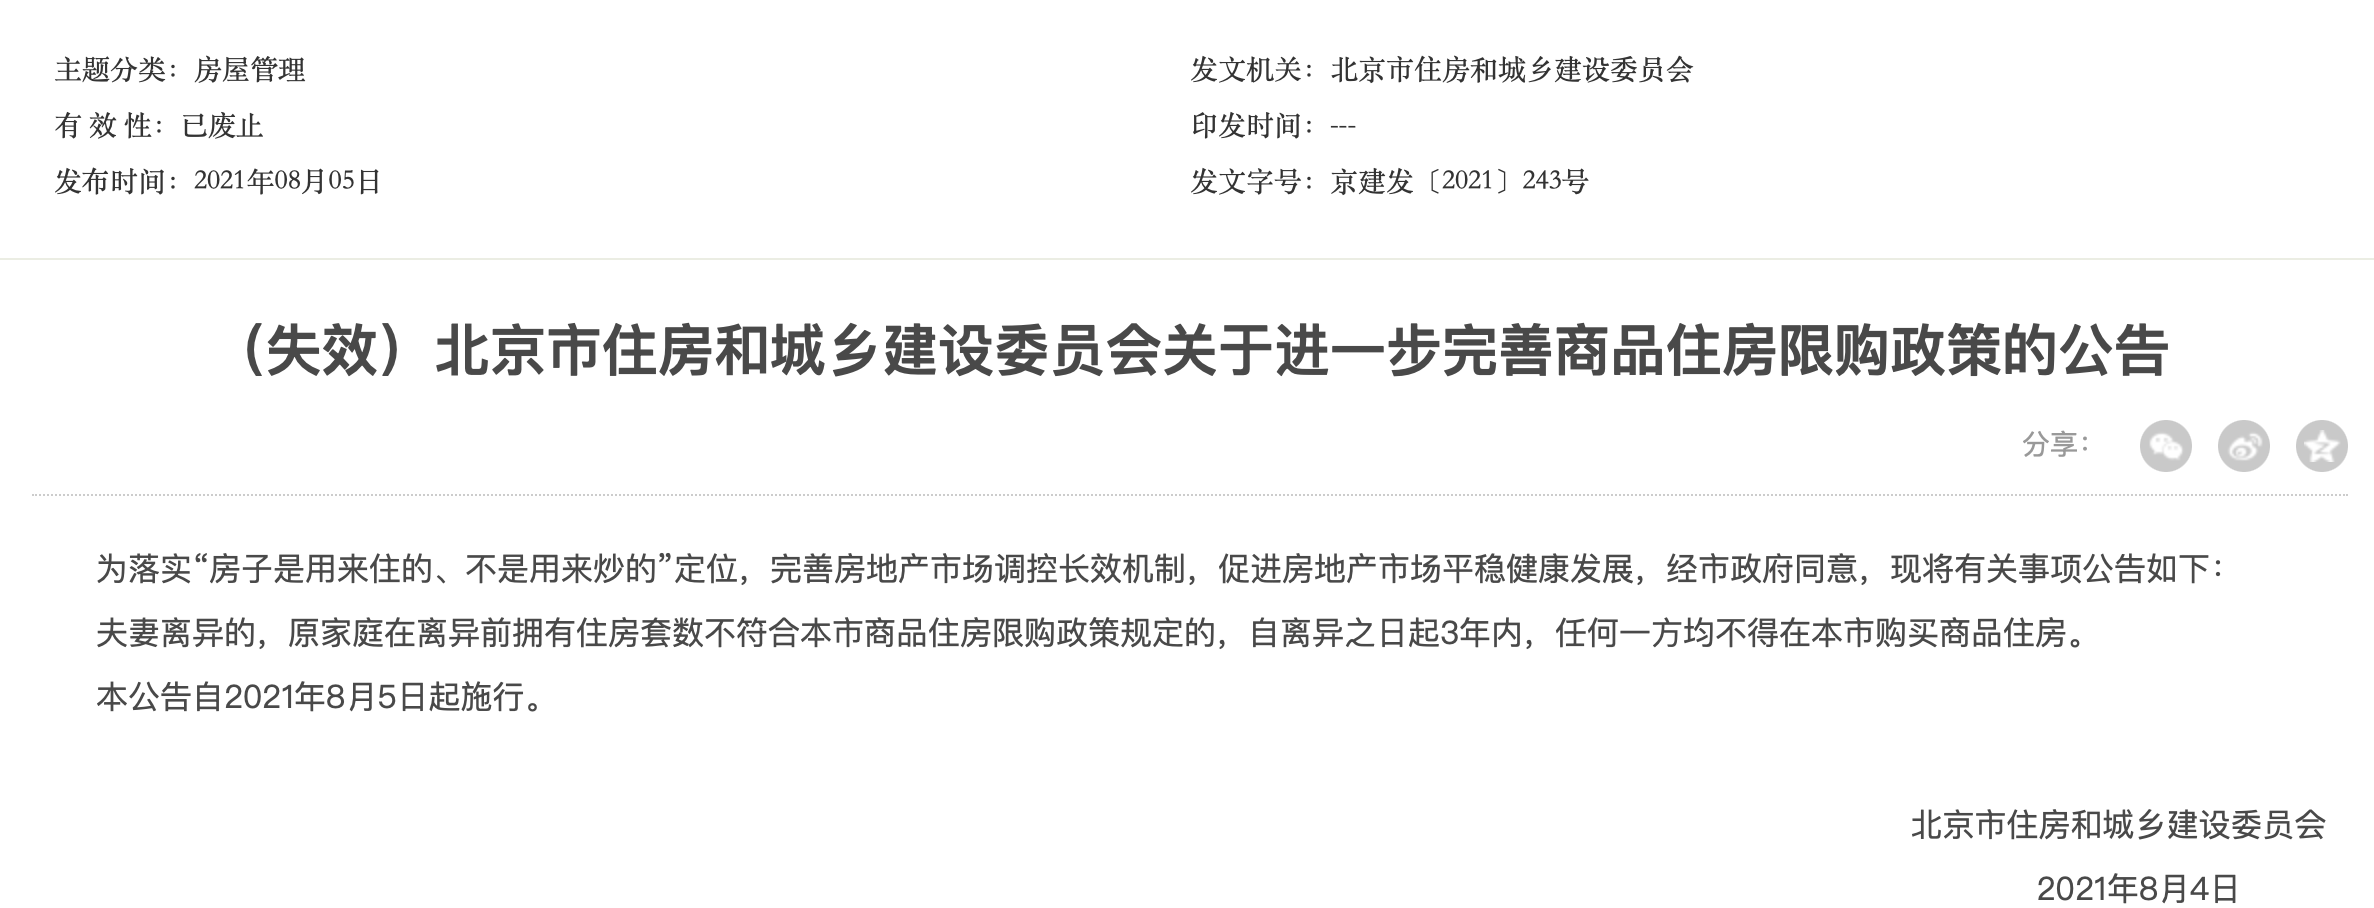 北京取消离婚限购政策，专家称“释放进一步优化政策的积极信号”